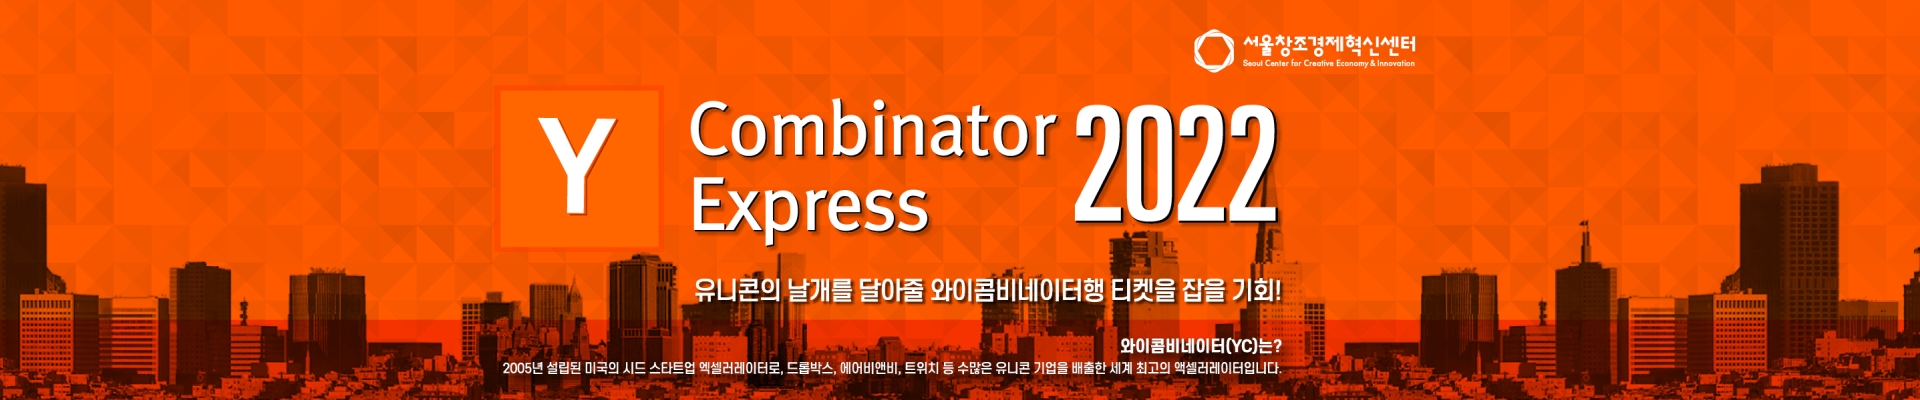 [서울창조경제혁신센터] 2022 Y Combinator 도전 스타트업 모집!(Y콤비네이터 익스프레스)